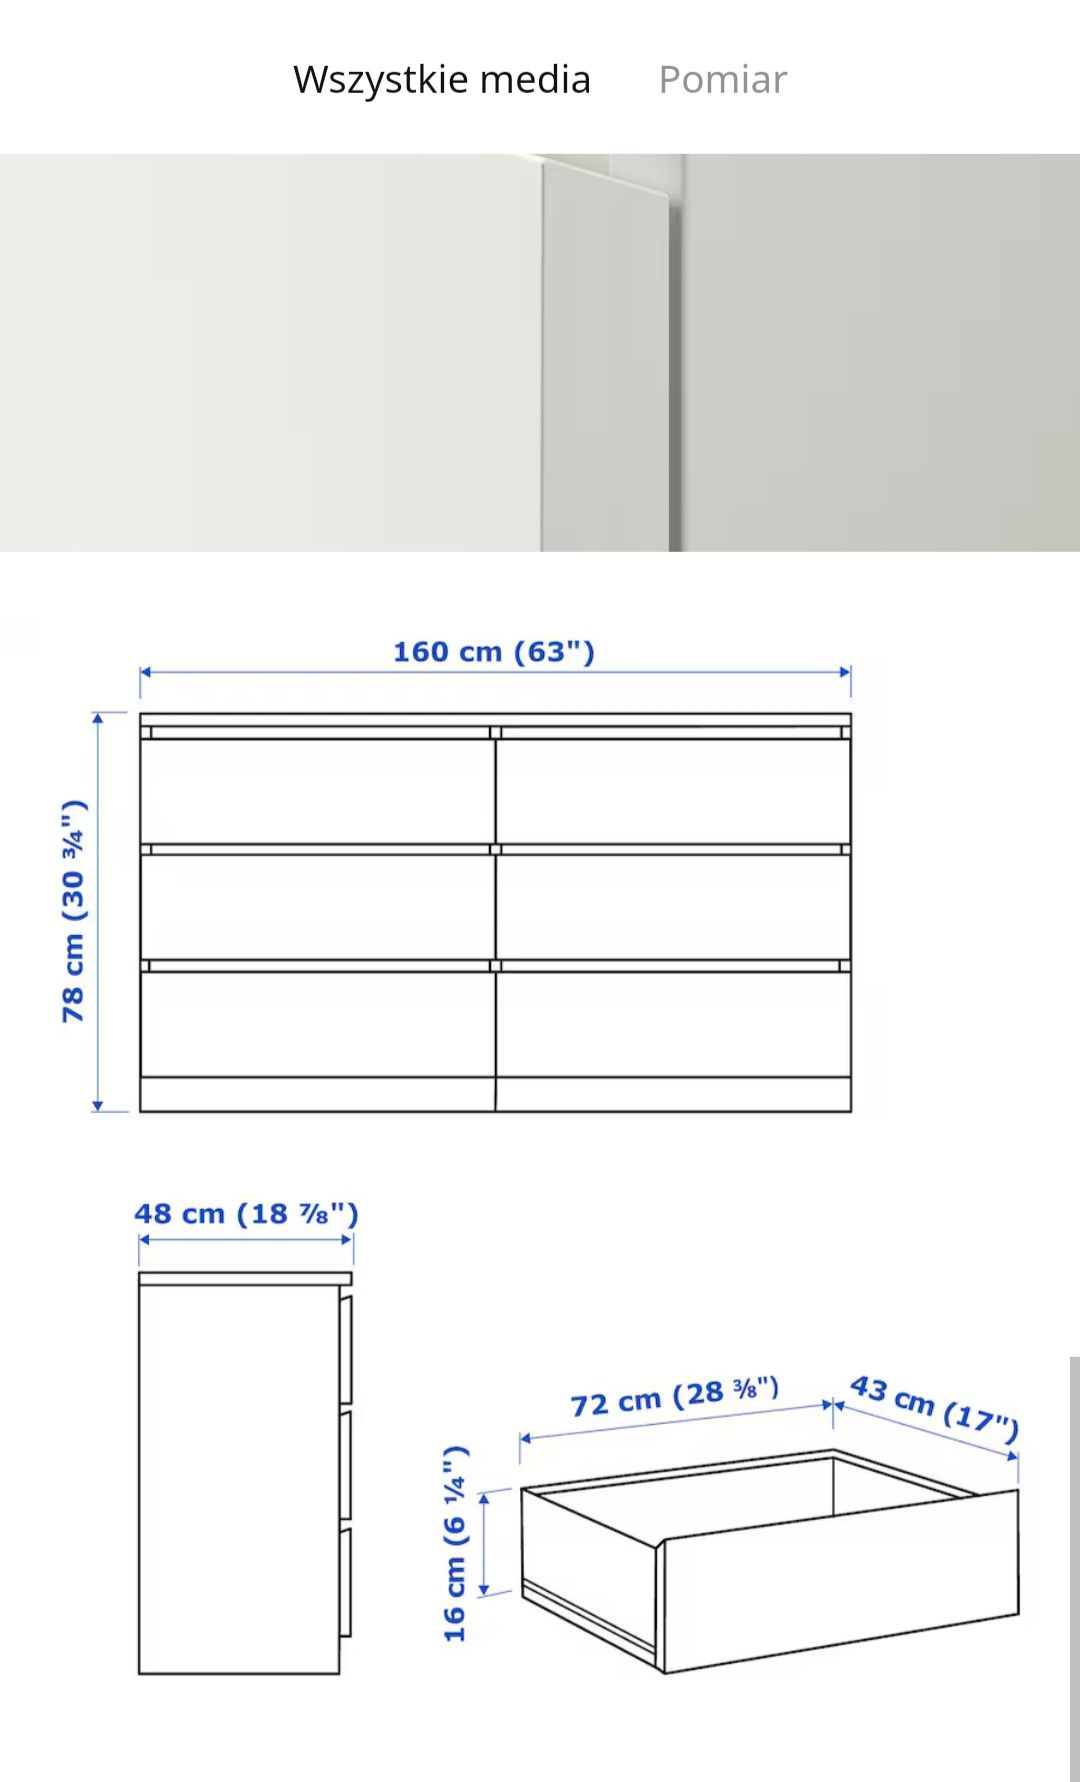 MALM komoda 6 szuflad 160x78cm
Komoda, 6 szuflad, biały, 160x78 cm
Kom